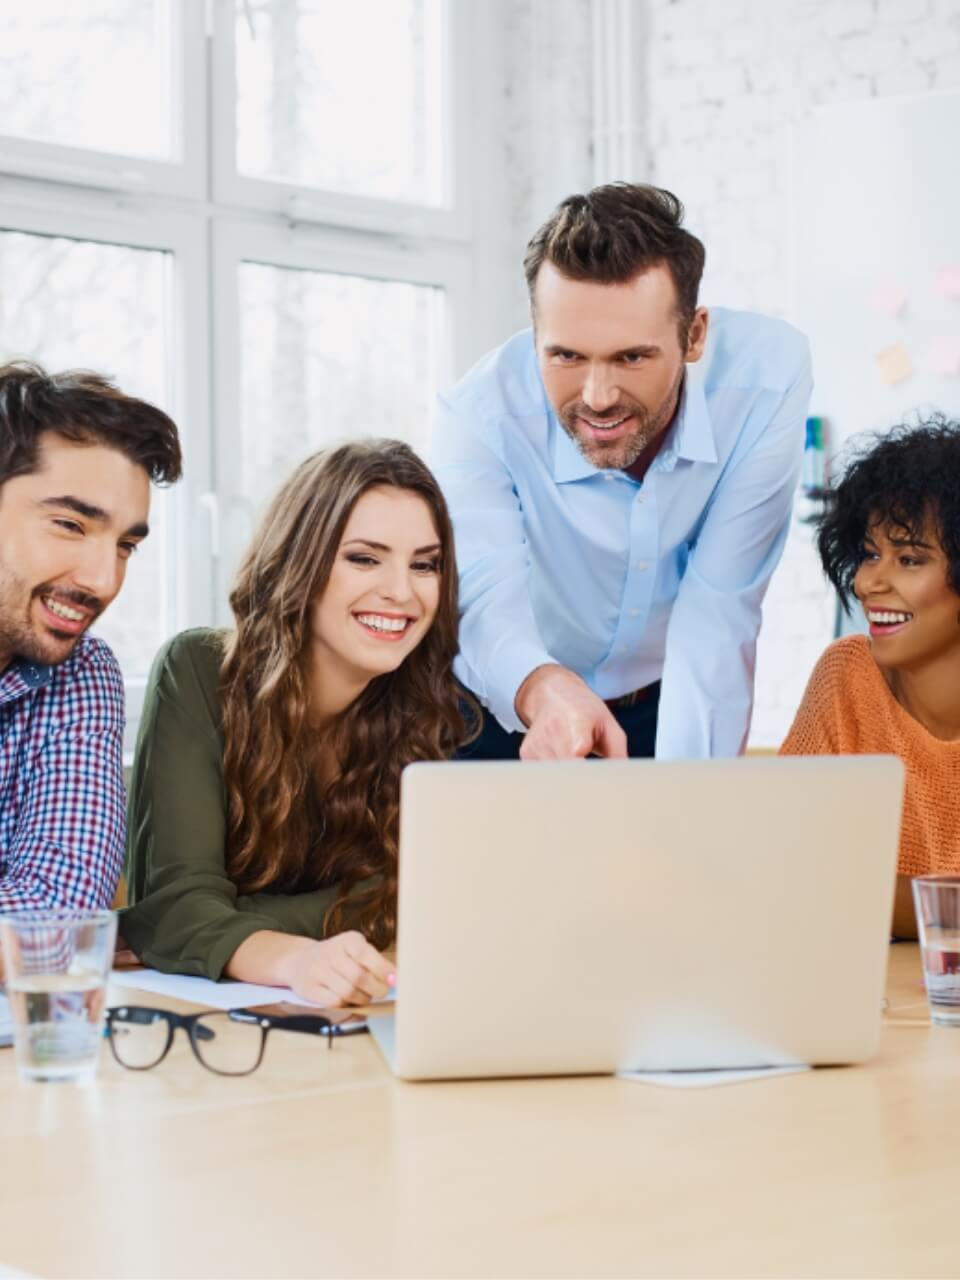 Vier lächelnde Kollegen betrachten gemeinsam einen Laptop auf einem hellen Bürotisch, offensichtlich in einer angenehmen Teamarbeitssituation.